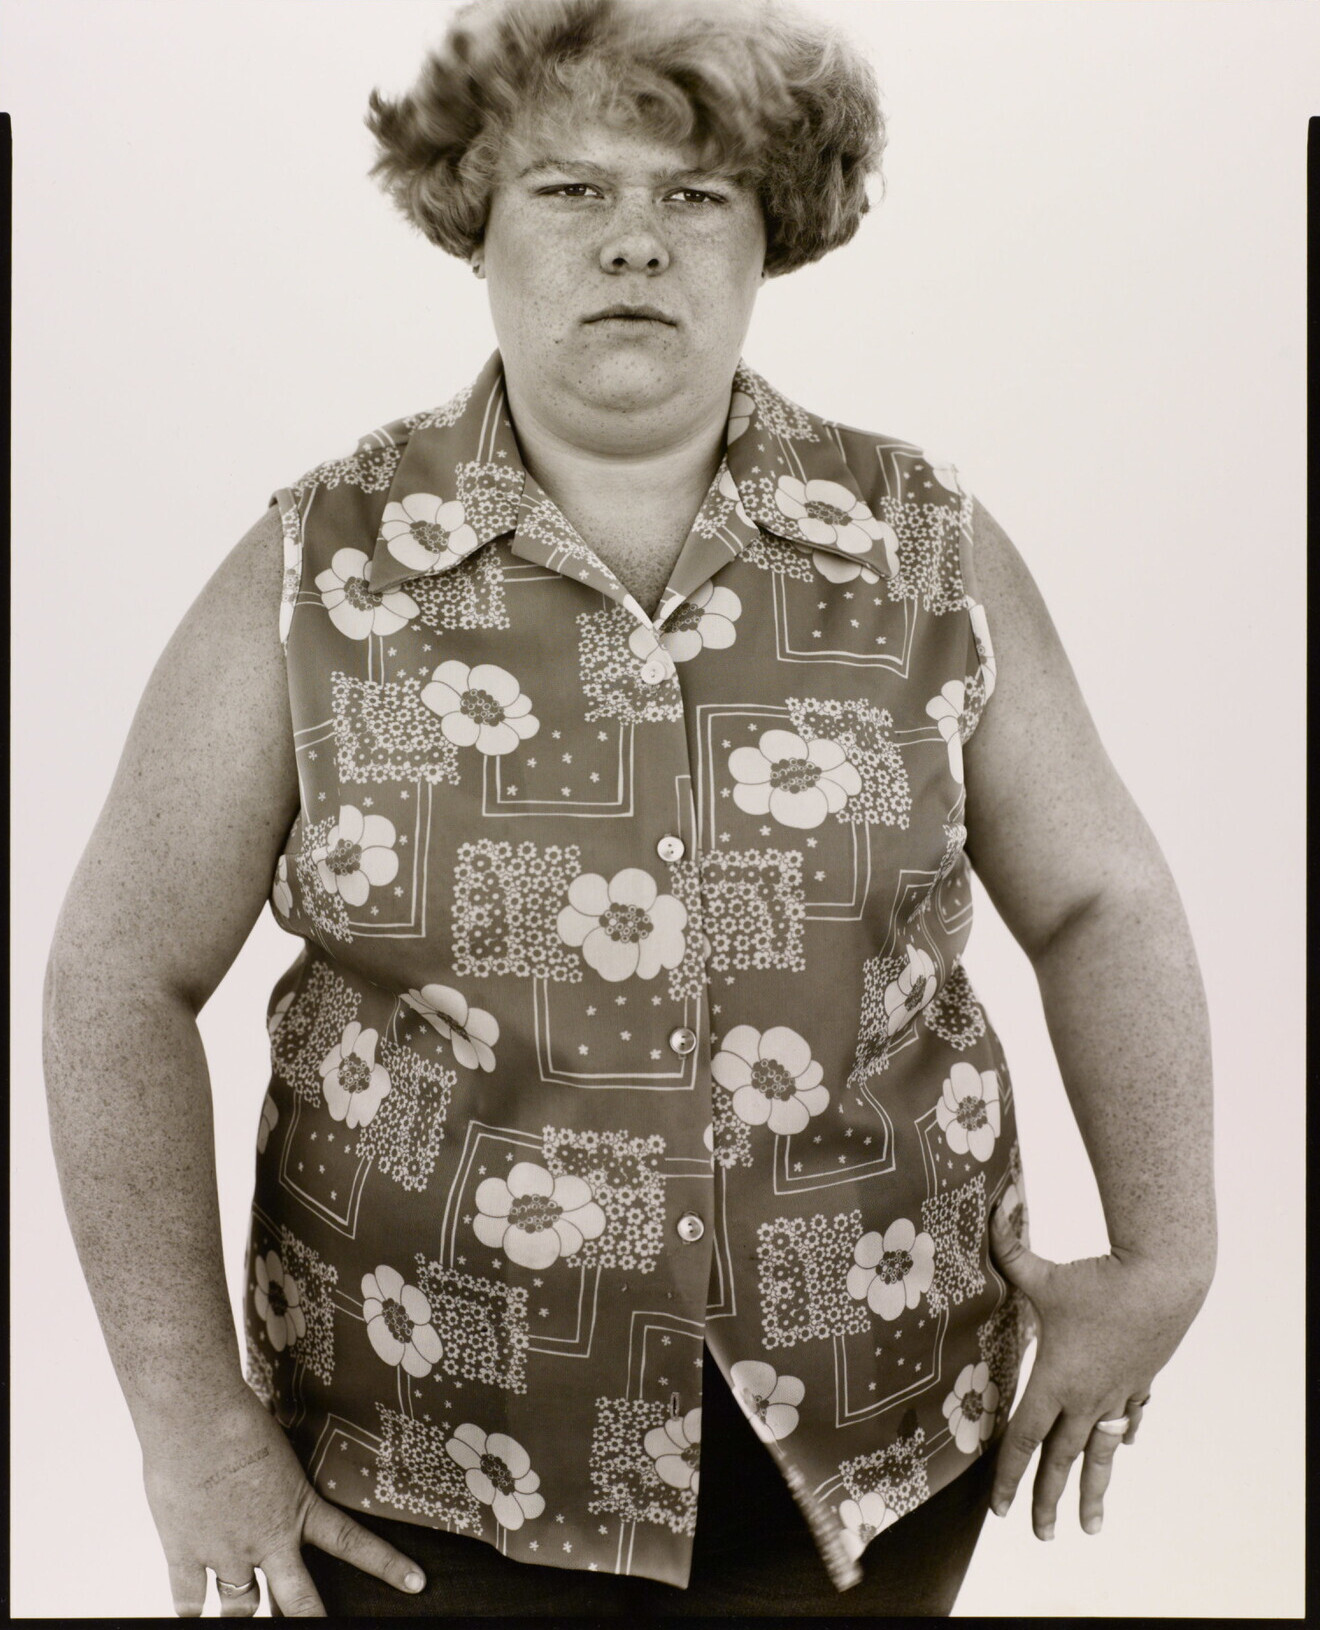 Шелия Болин, семнадцать лет, Ламеса, Техас, 10 марта 1979 г. Фотограф Ричард Аведон